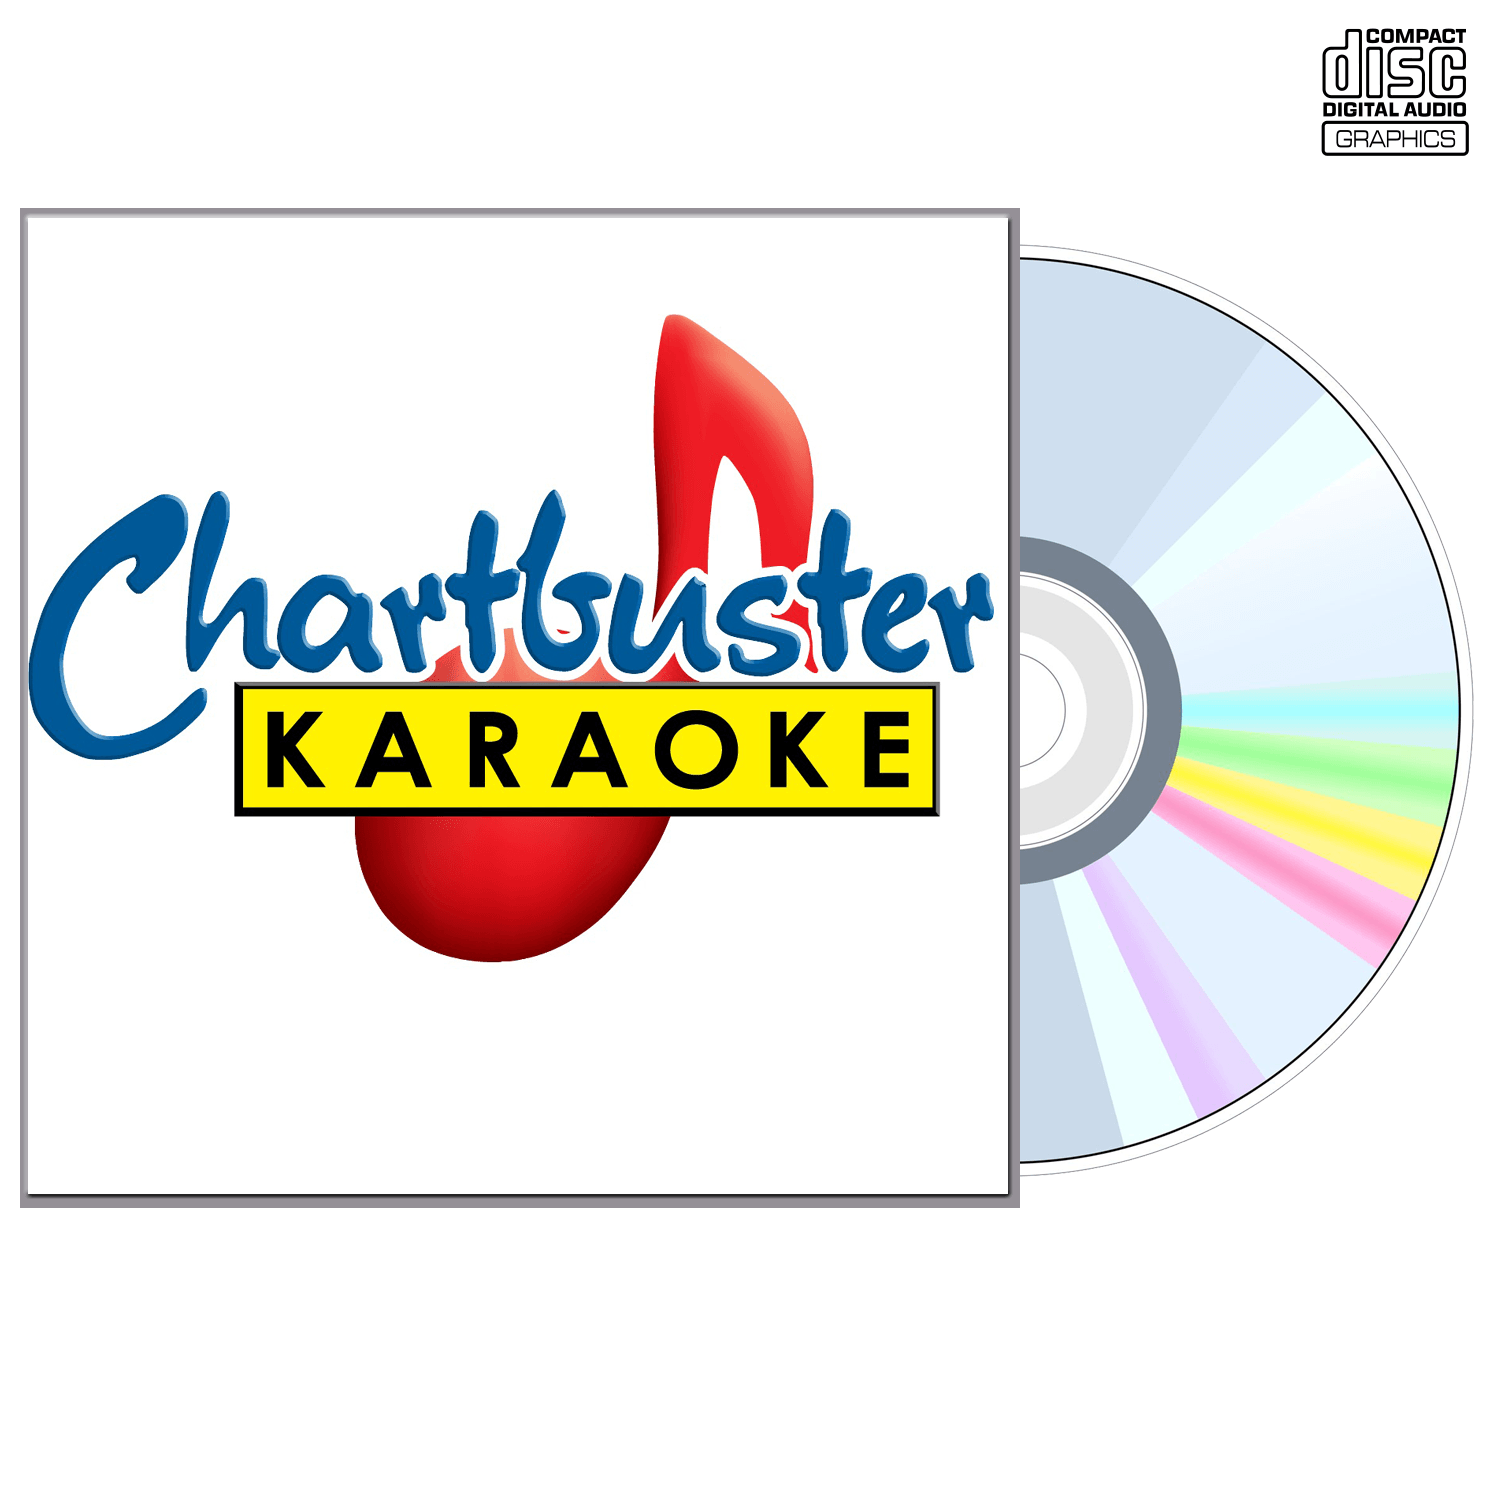 Akon - CD+G - Chartbuster Karaoke - Karaoke Home Entertainment